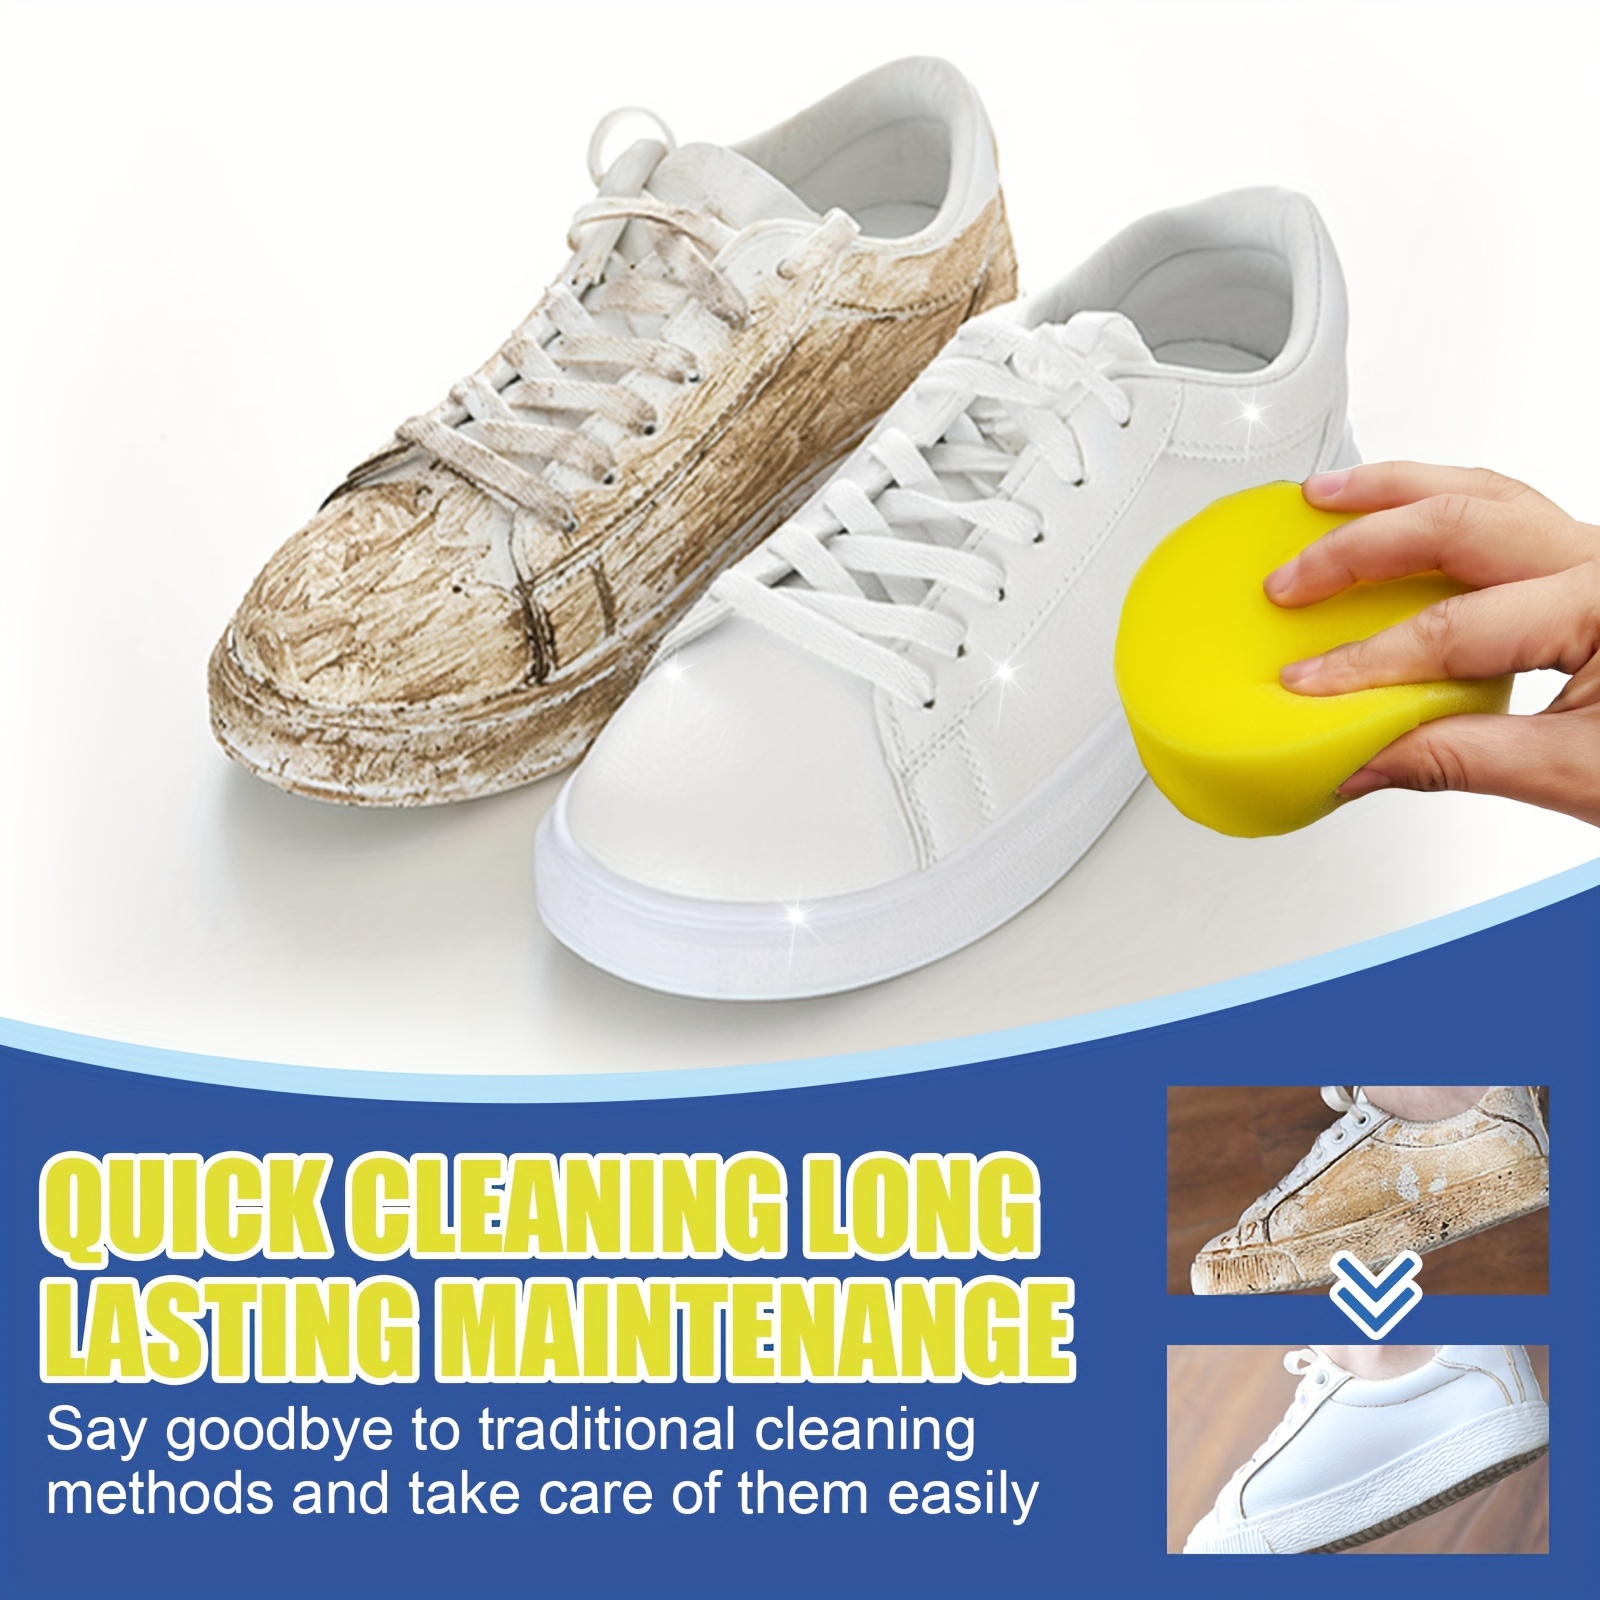 Acheter Crème détachante nettoyage rapide chaussure blanche Application  facile restaure instantanément les chaussures à leur nouvelle crème  nettoyante